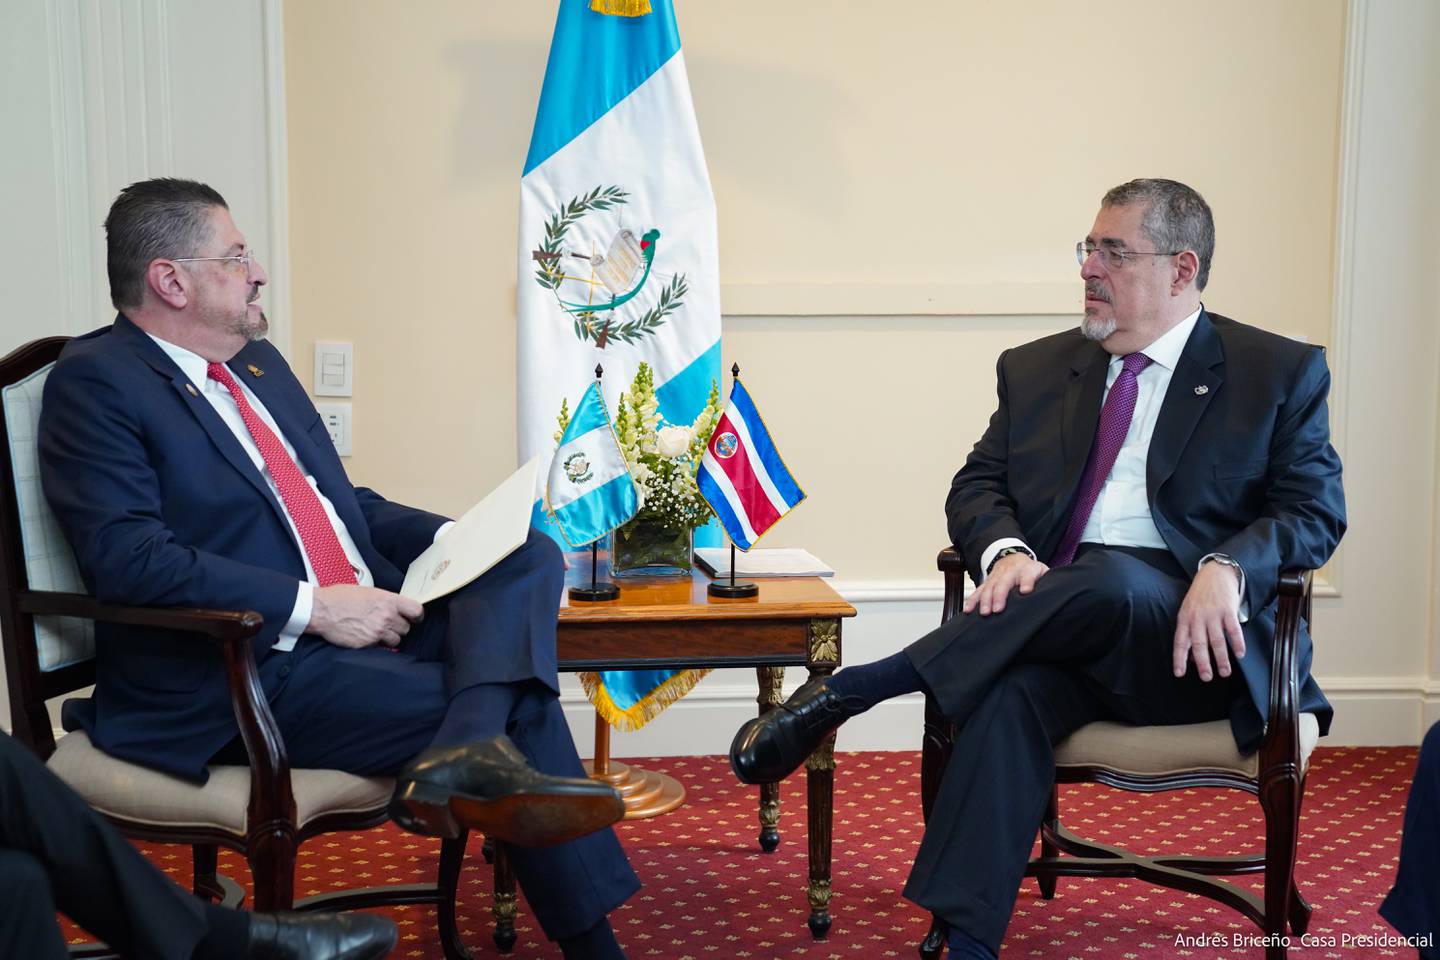 Los dos presidentes centroamericanos trataron temas de interés común para sus naciones.